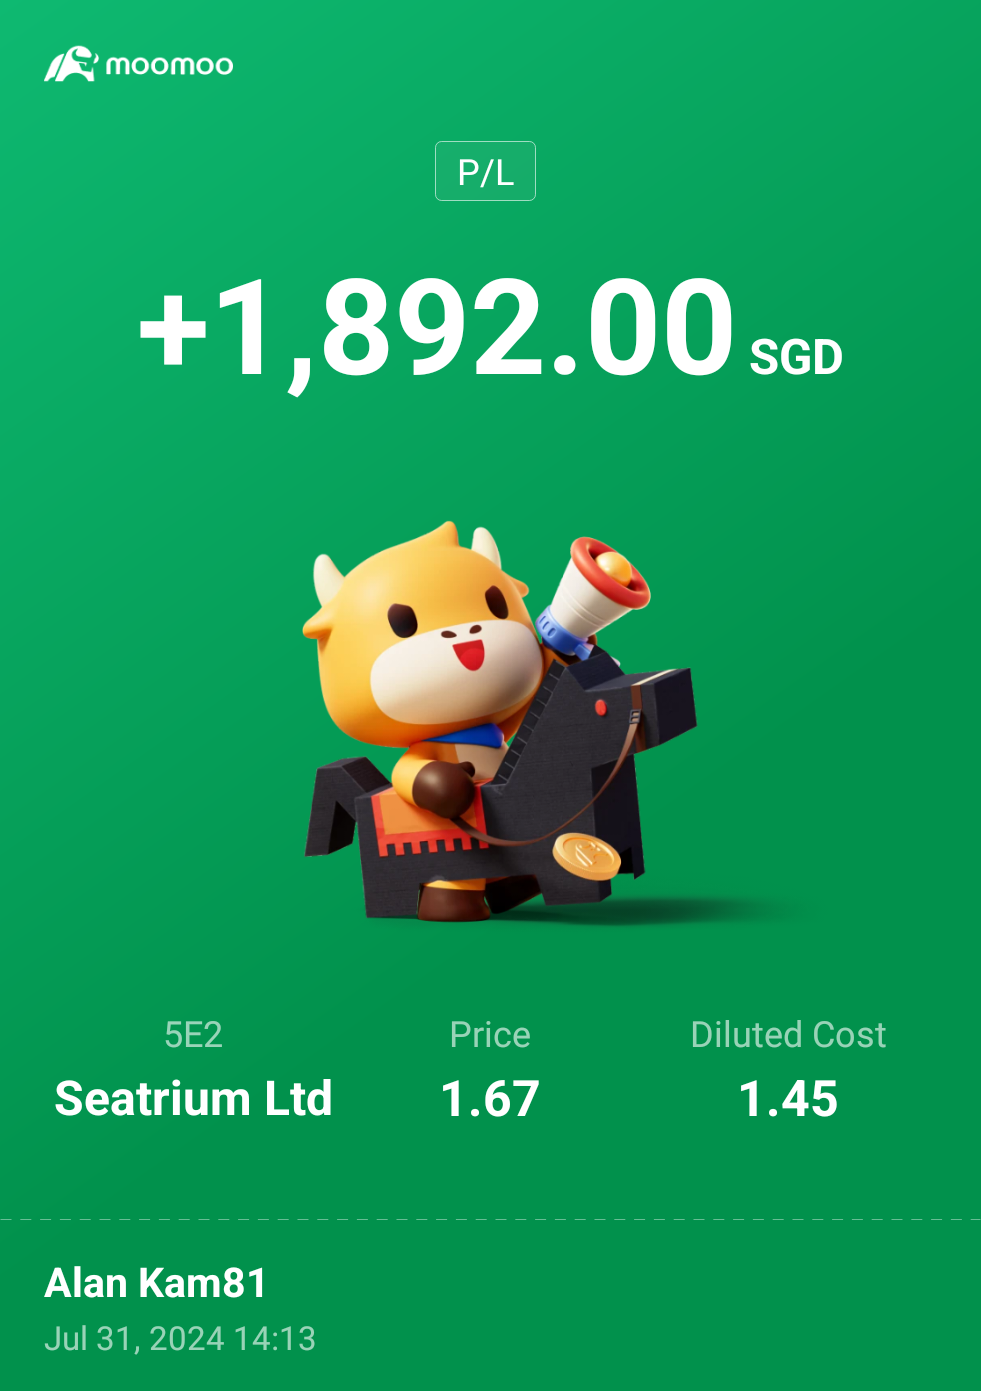 $Seatrium Ltd (5E2.SG)$